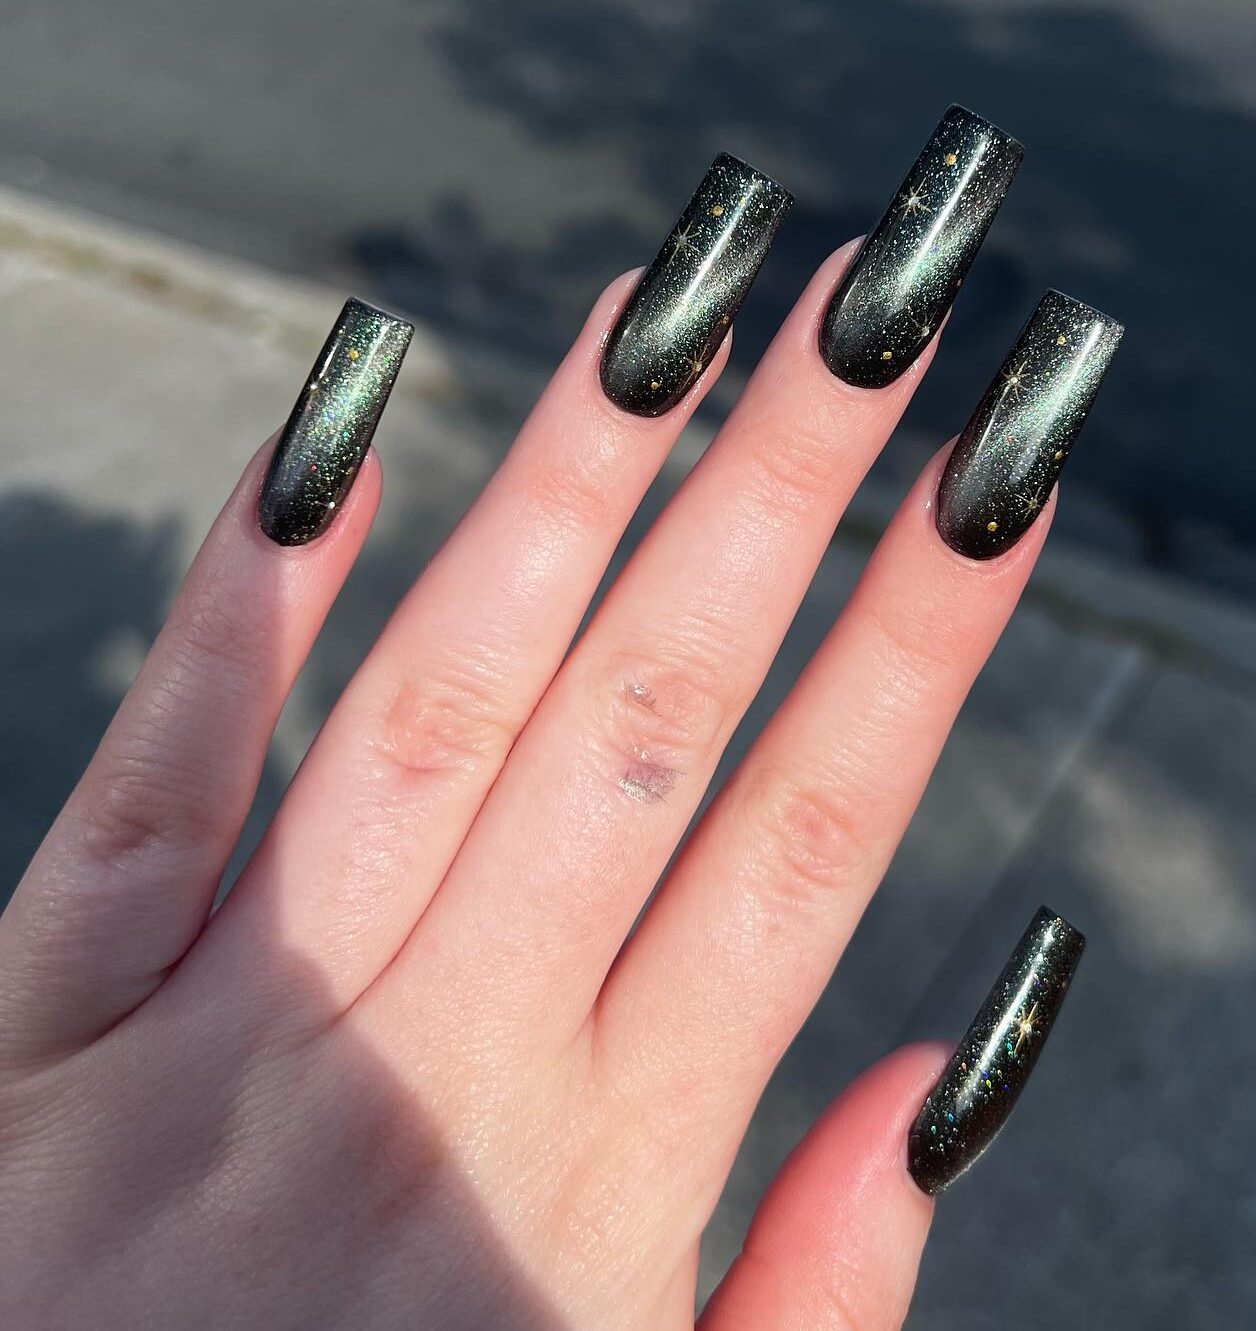 Black galaxy-inspired nail art on long square nails